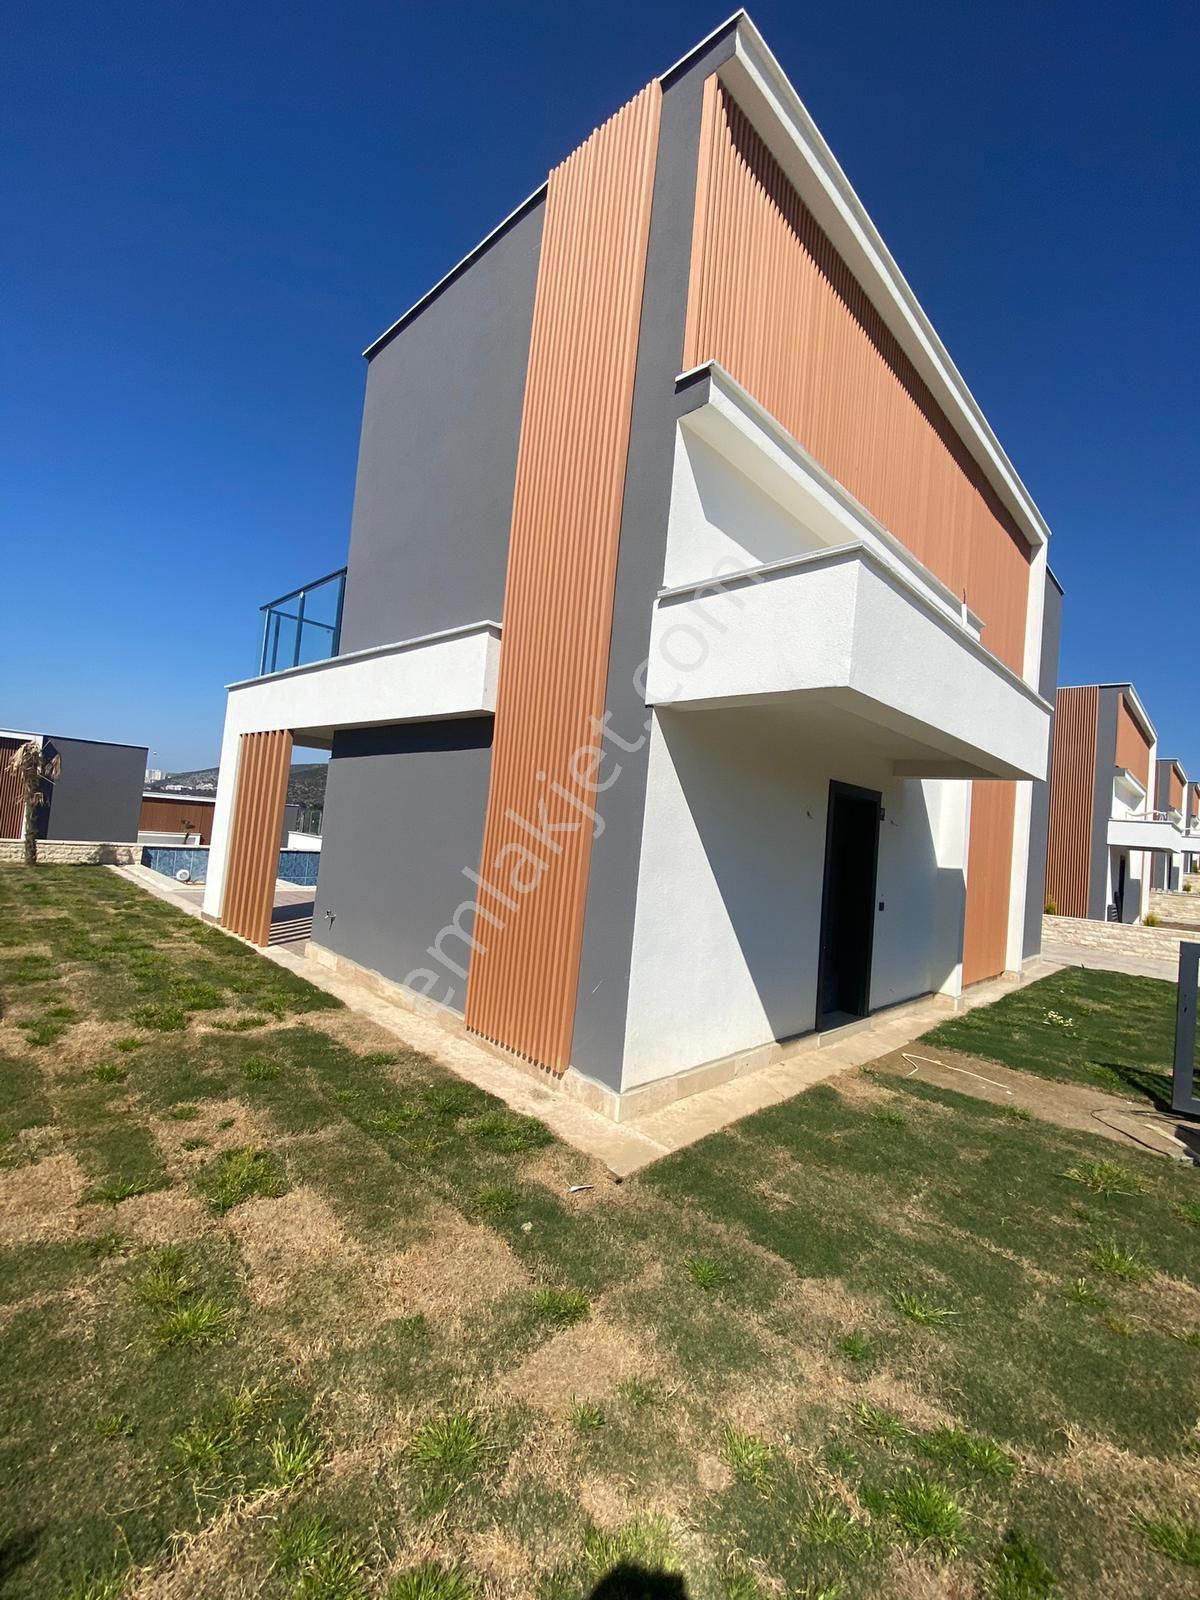 Kuşadası Değirmendere Satılık Villa Kuşadası Değirmendere 4+1 satılık dublex villa